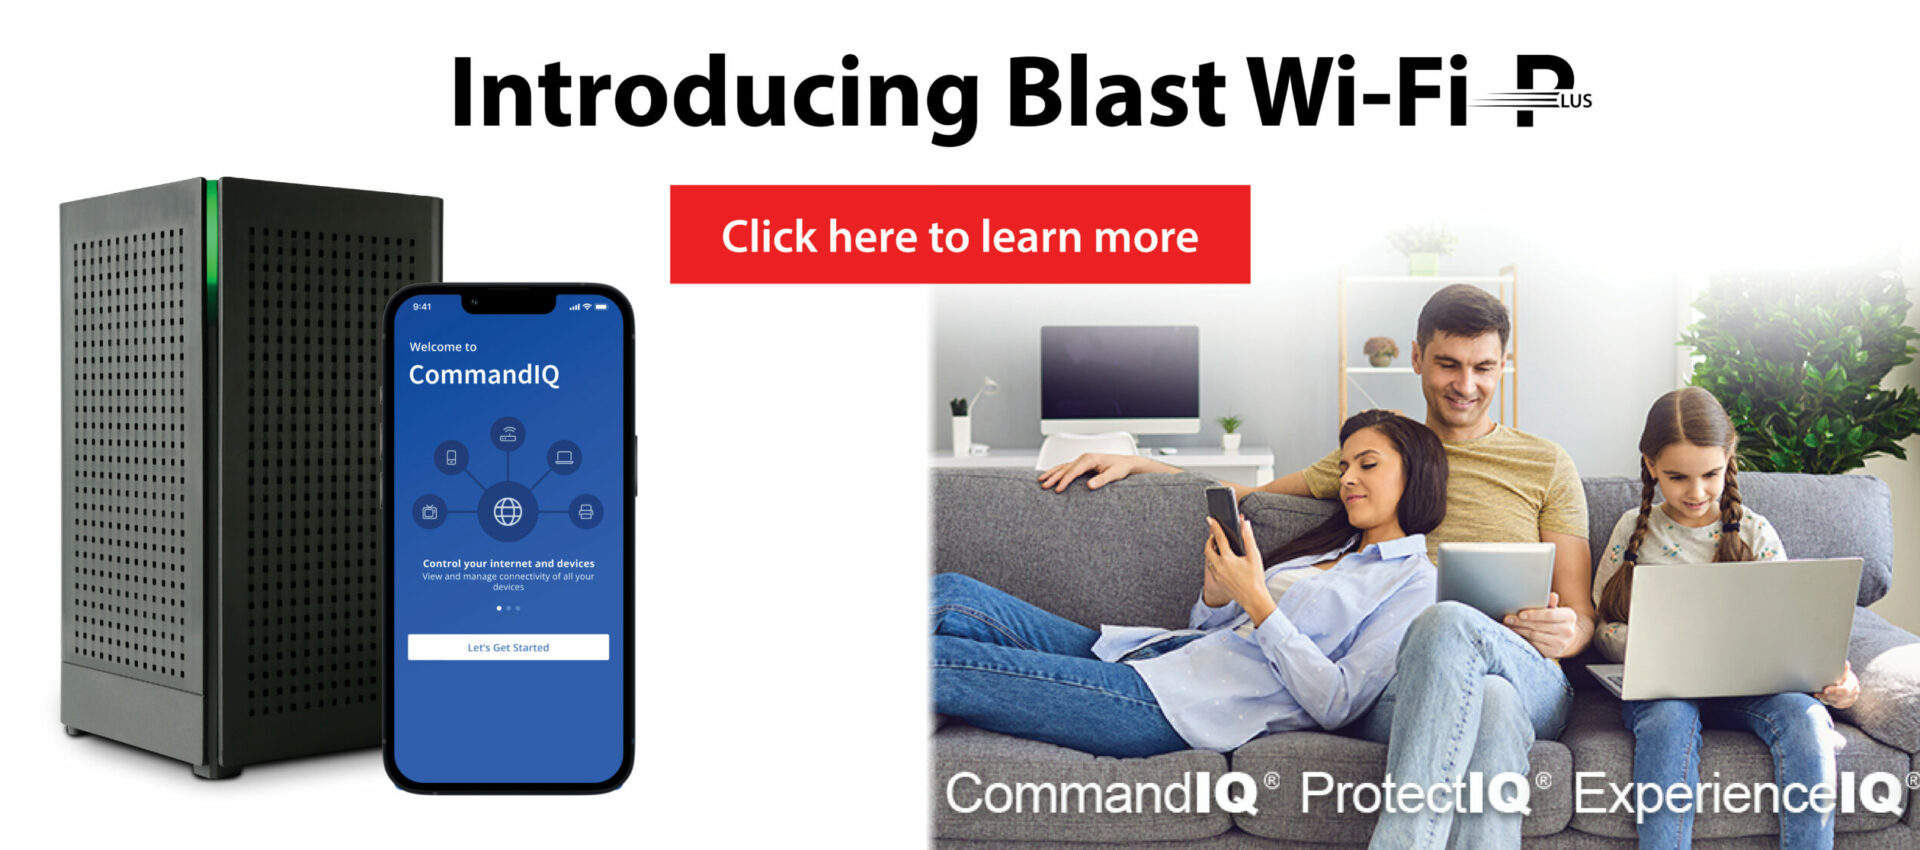 Blast Wi-Fi